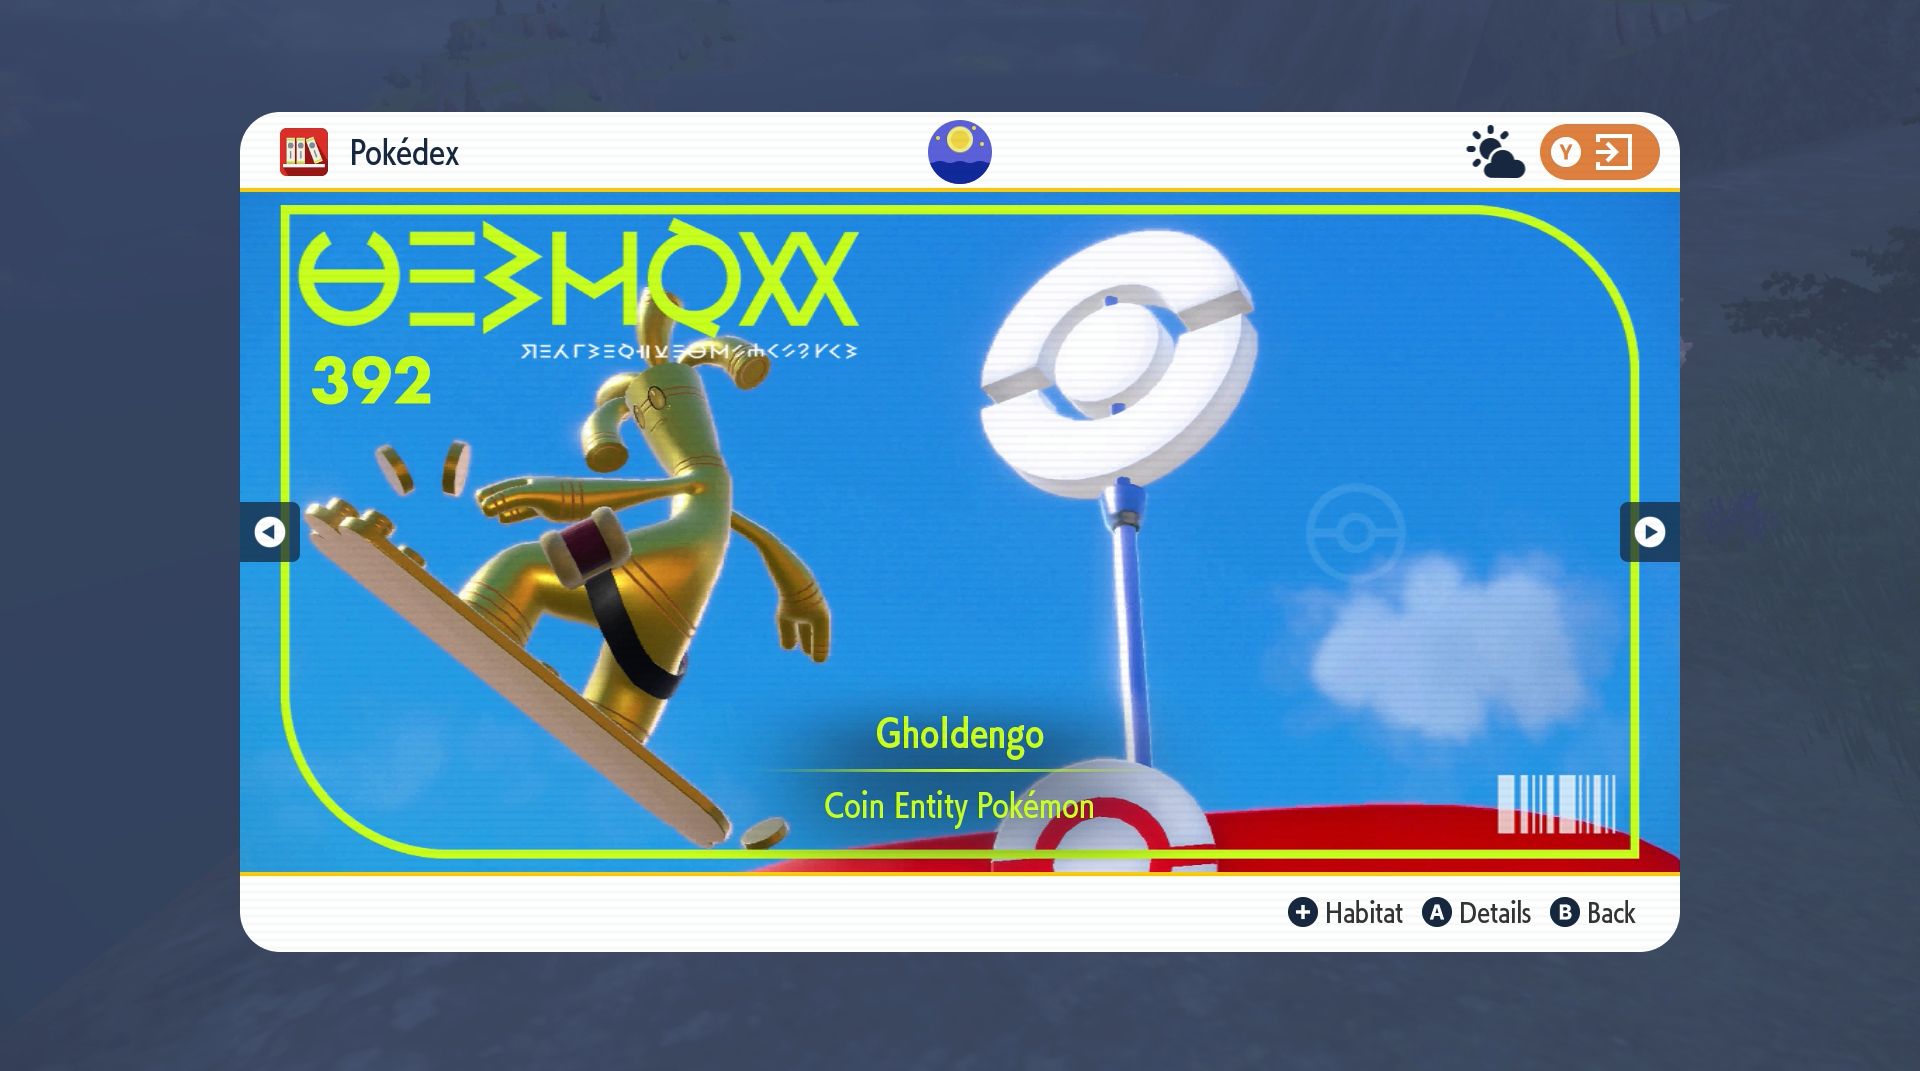 O Pokémon de moeda de ouro Gholdengo é visto voando pelo ar enquanto anda em uma prancha de snowboard feita de moedas de ouro enquanto uma placa do PokeCenter é vista atrás dela